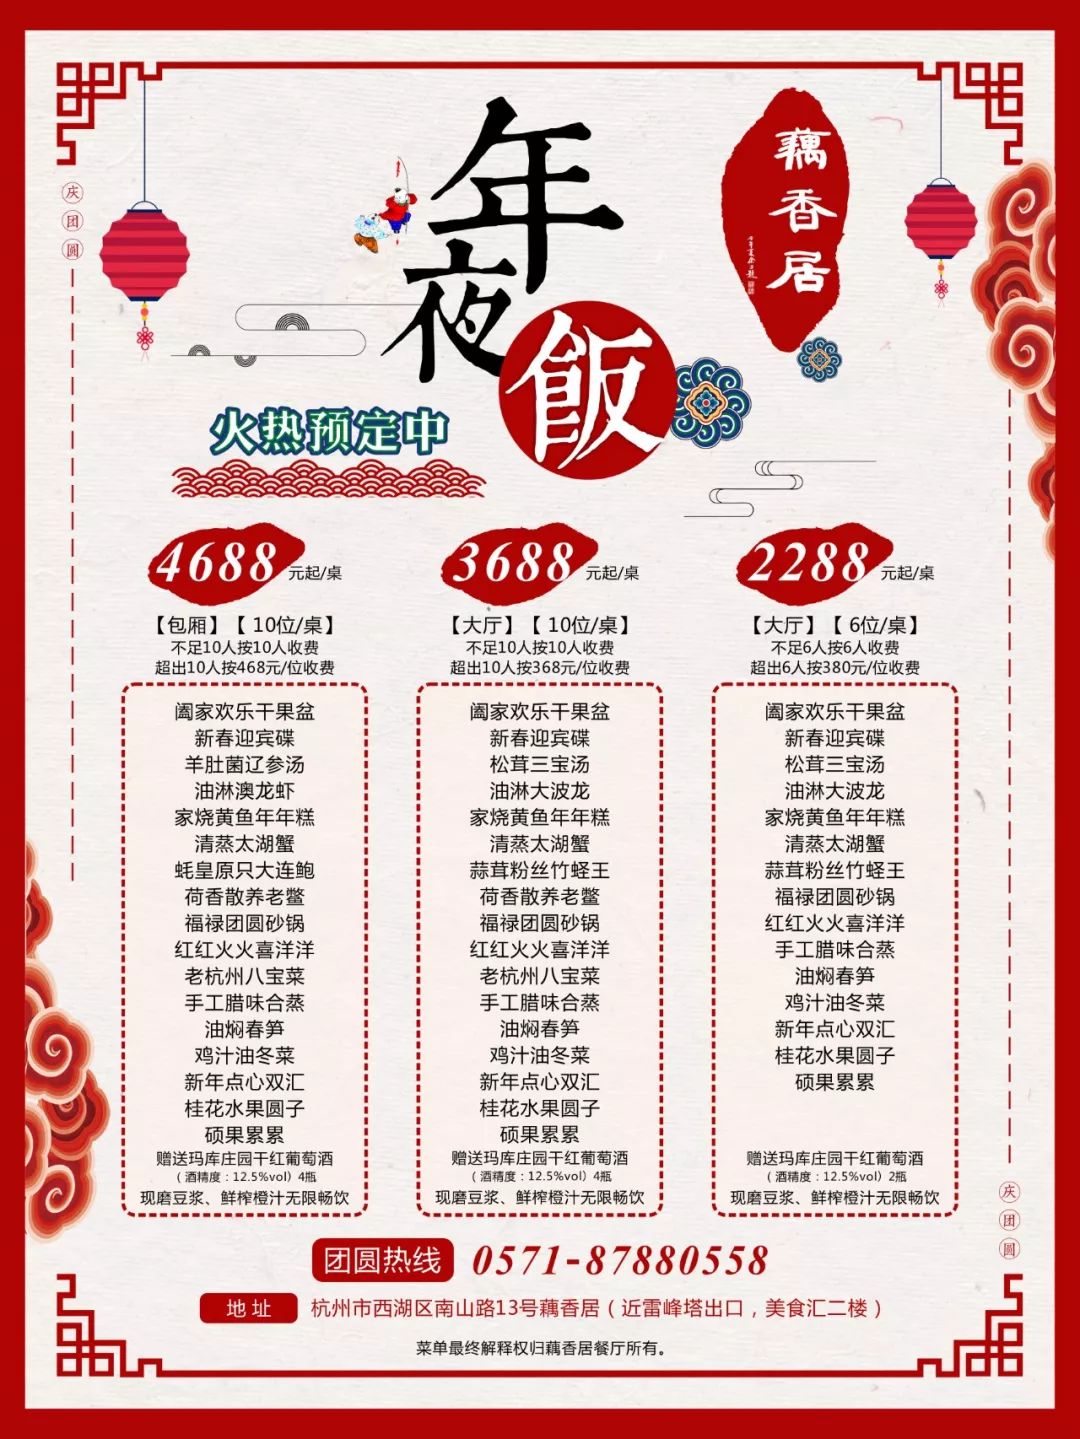 2019杭州年夜饭预订指南(价格+地址)